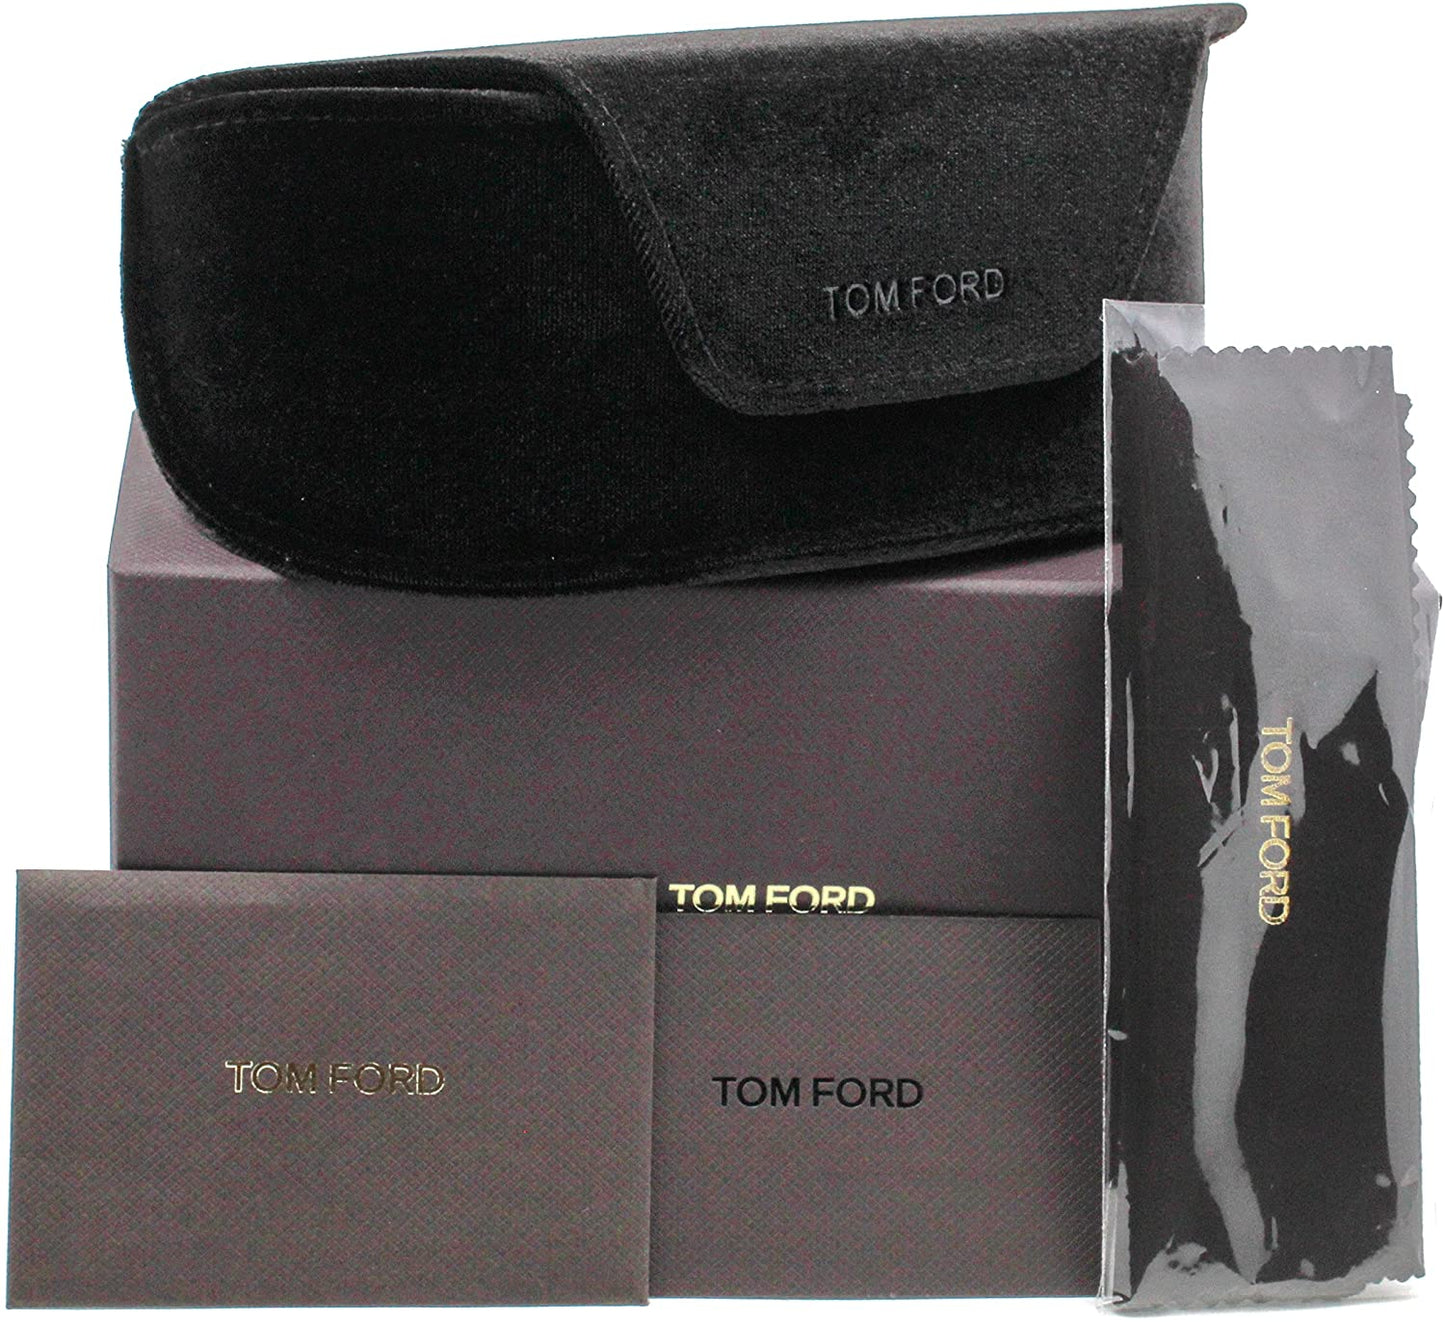 Tom Ford FT0517-052G 55mm New Sunglasses